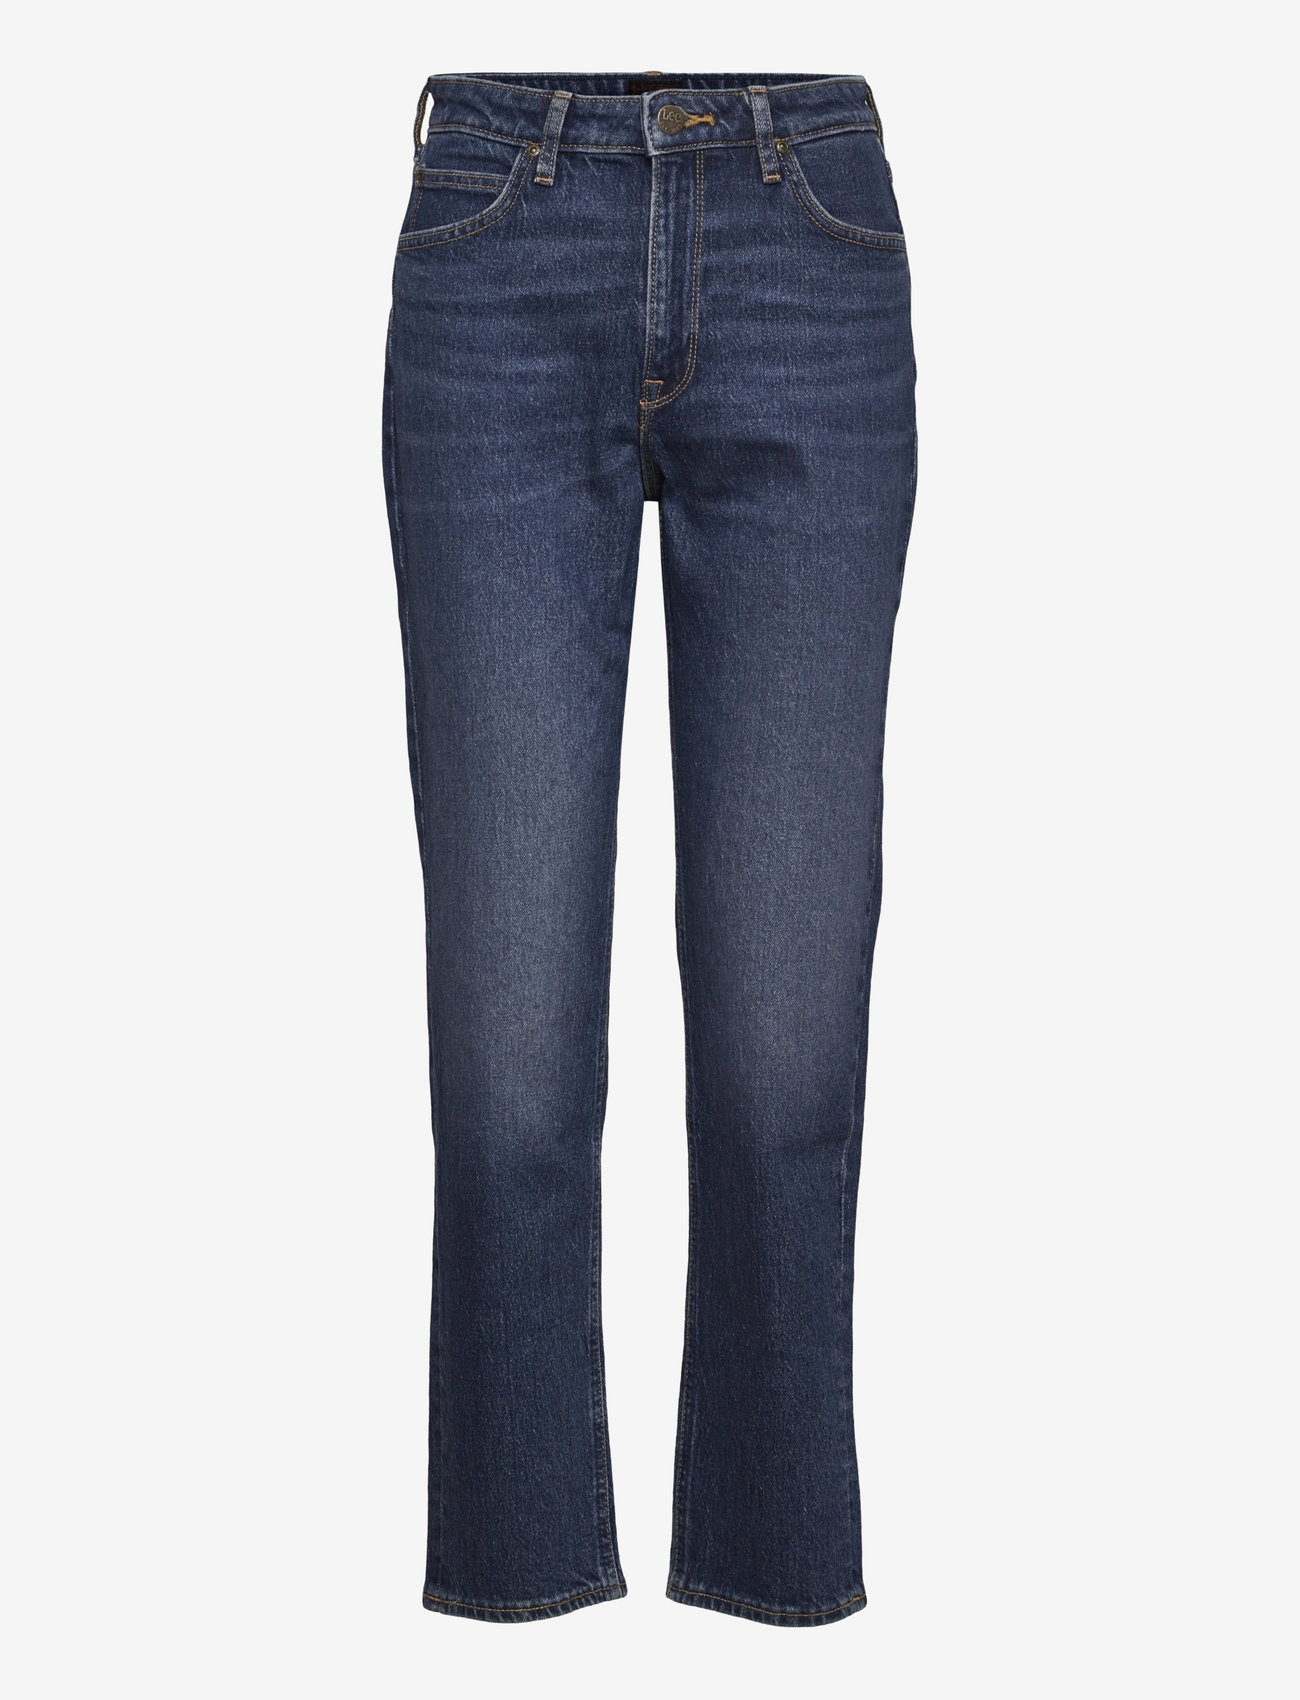 Lee Jeans - CAROL - tiesaus kirpimo džinsai - dark ruby - 0